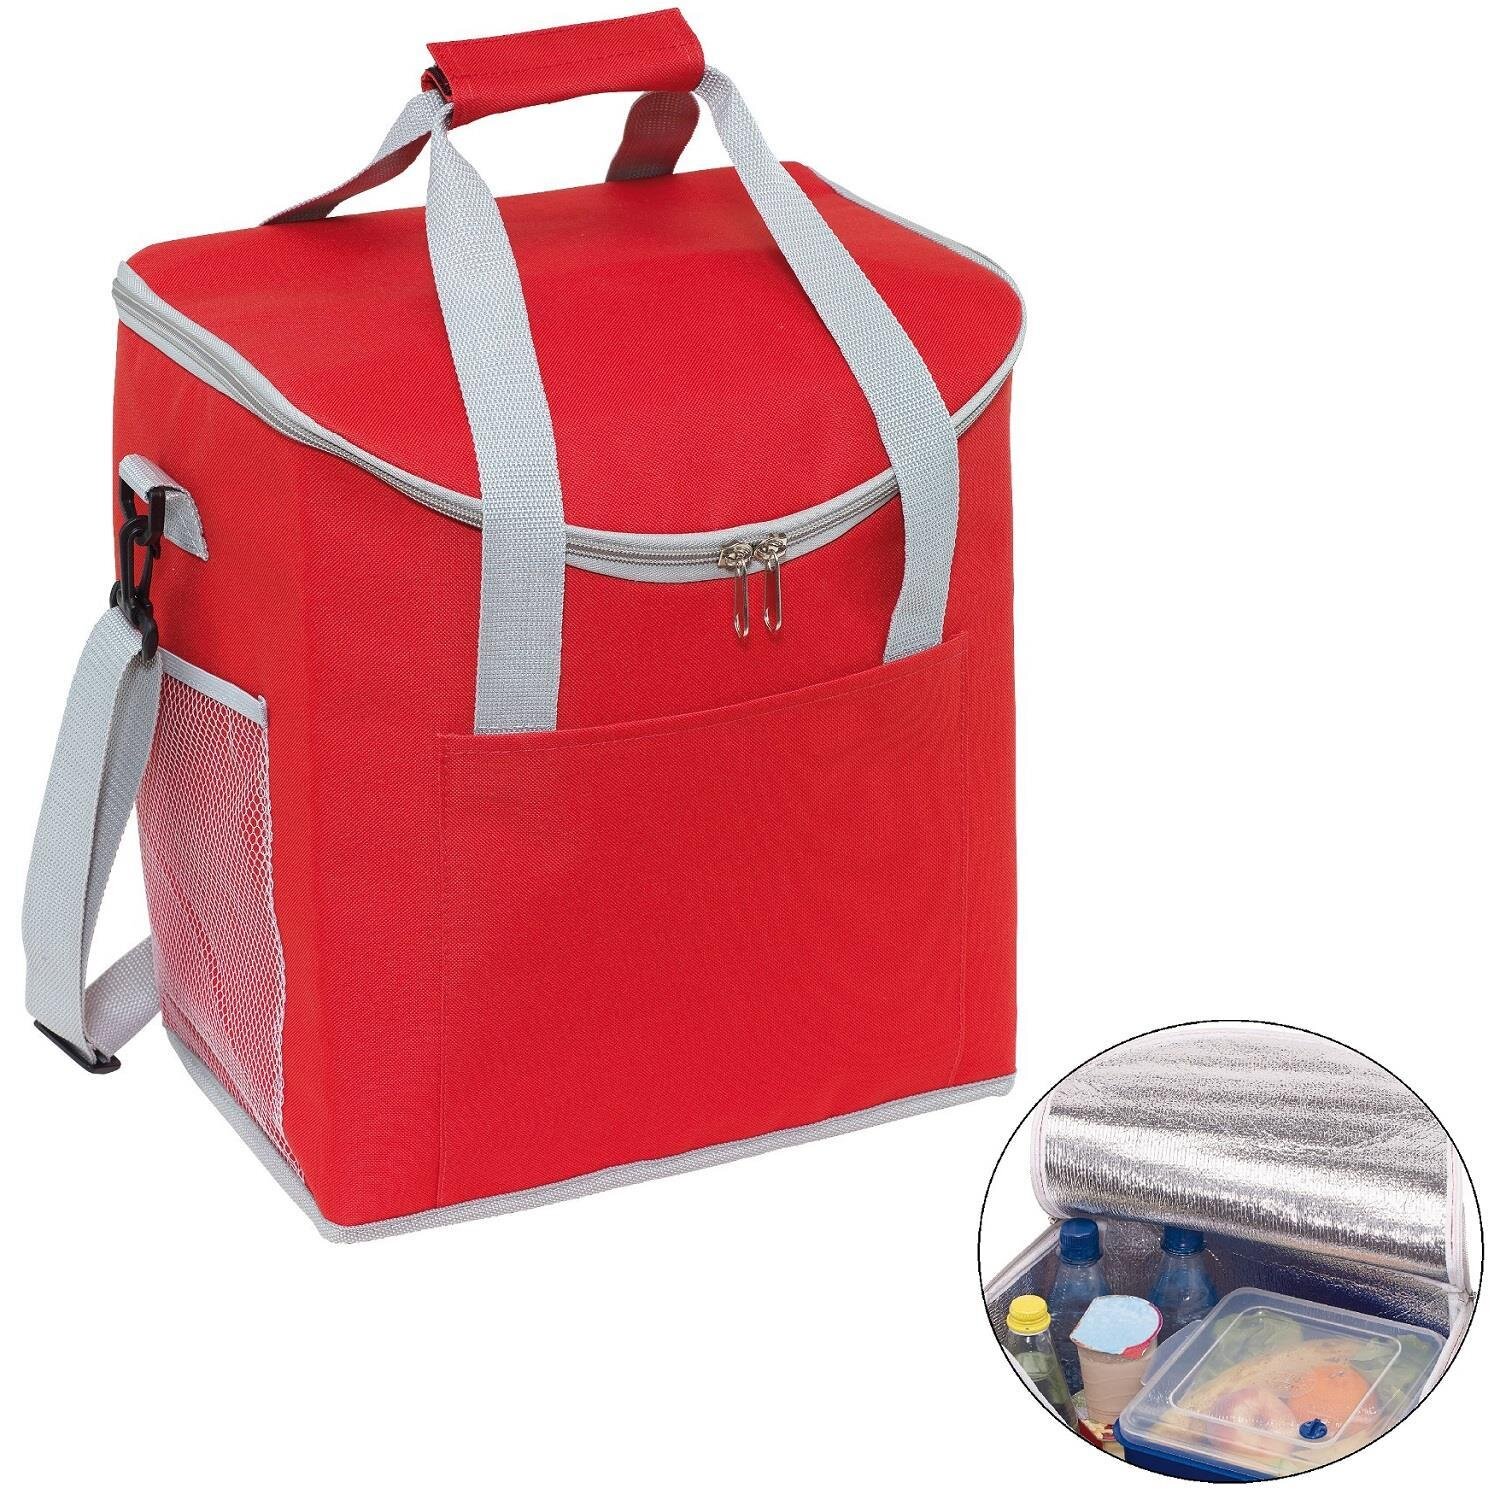 Kühltasche groß faltbar Kühlbox Rot Thermotasche 32x23x37cm Isotasche  Picknick -, 10,90 €